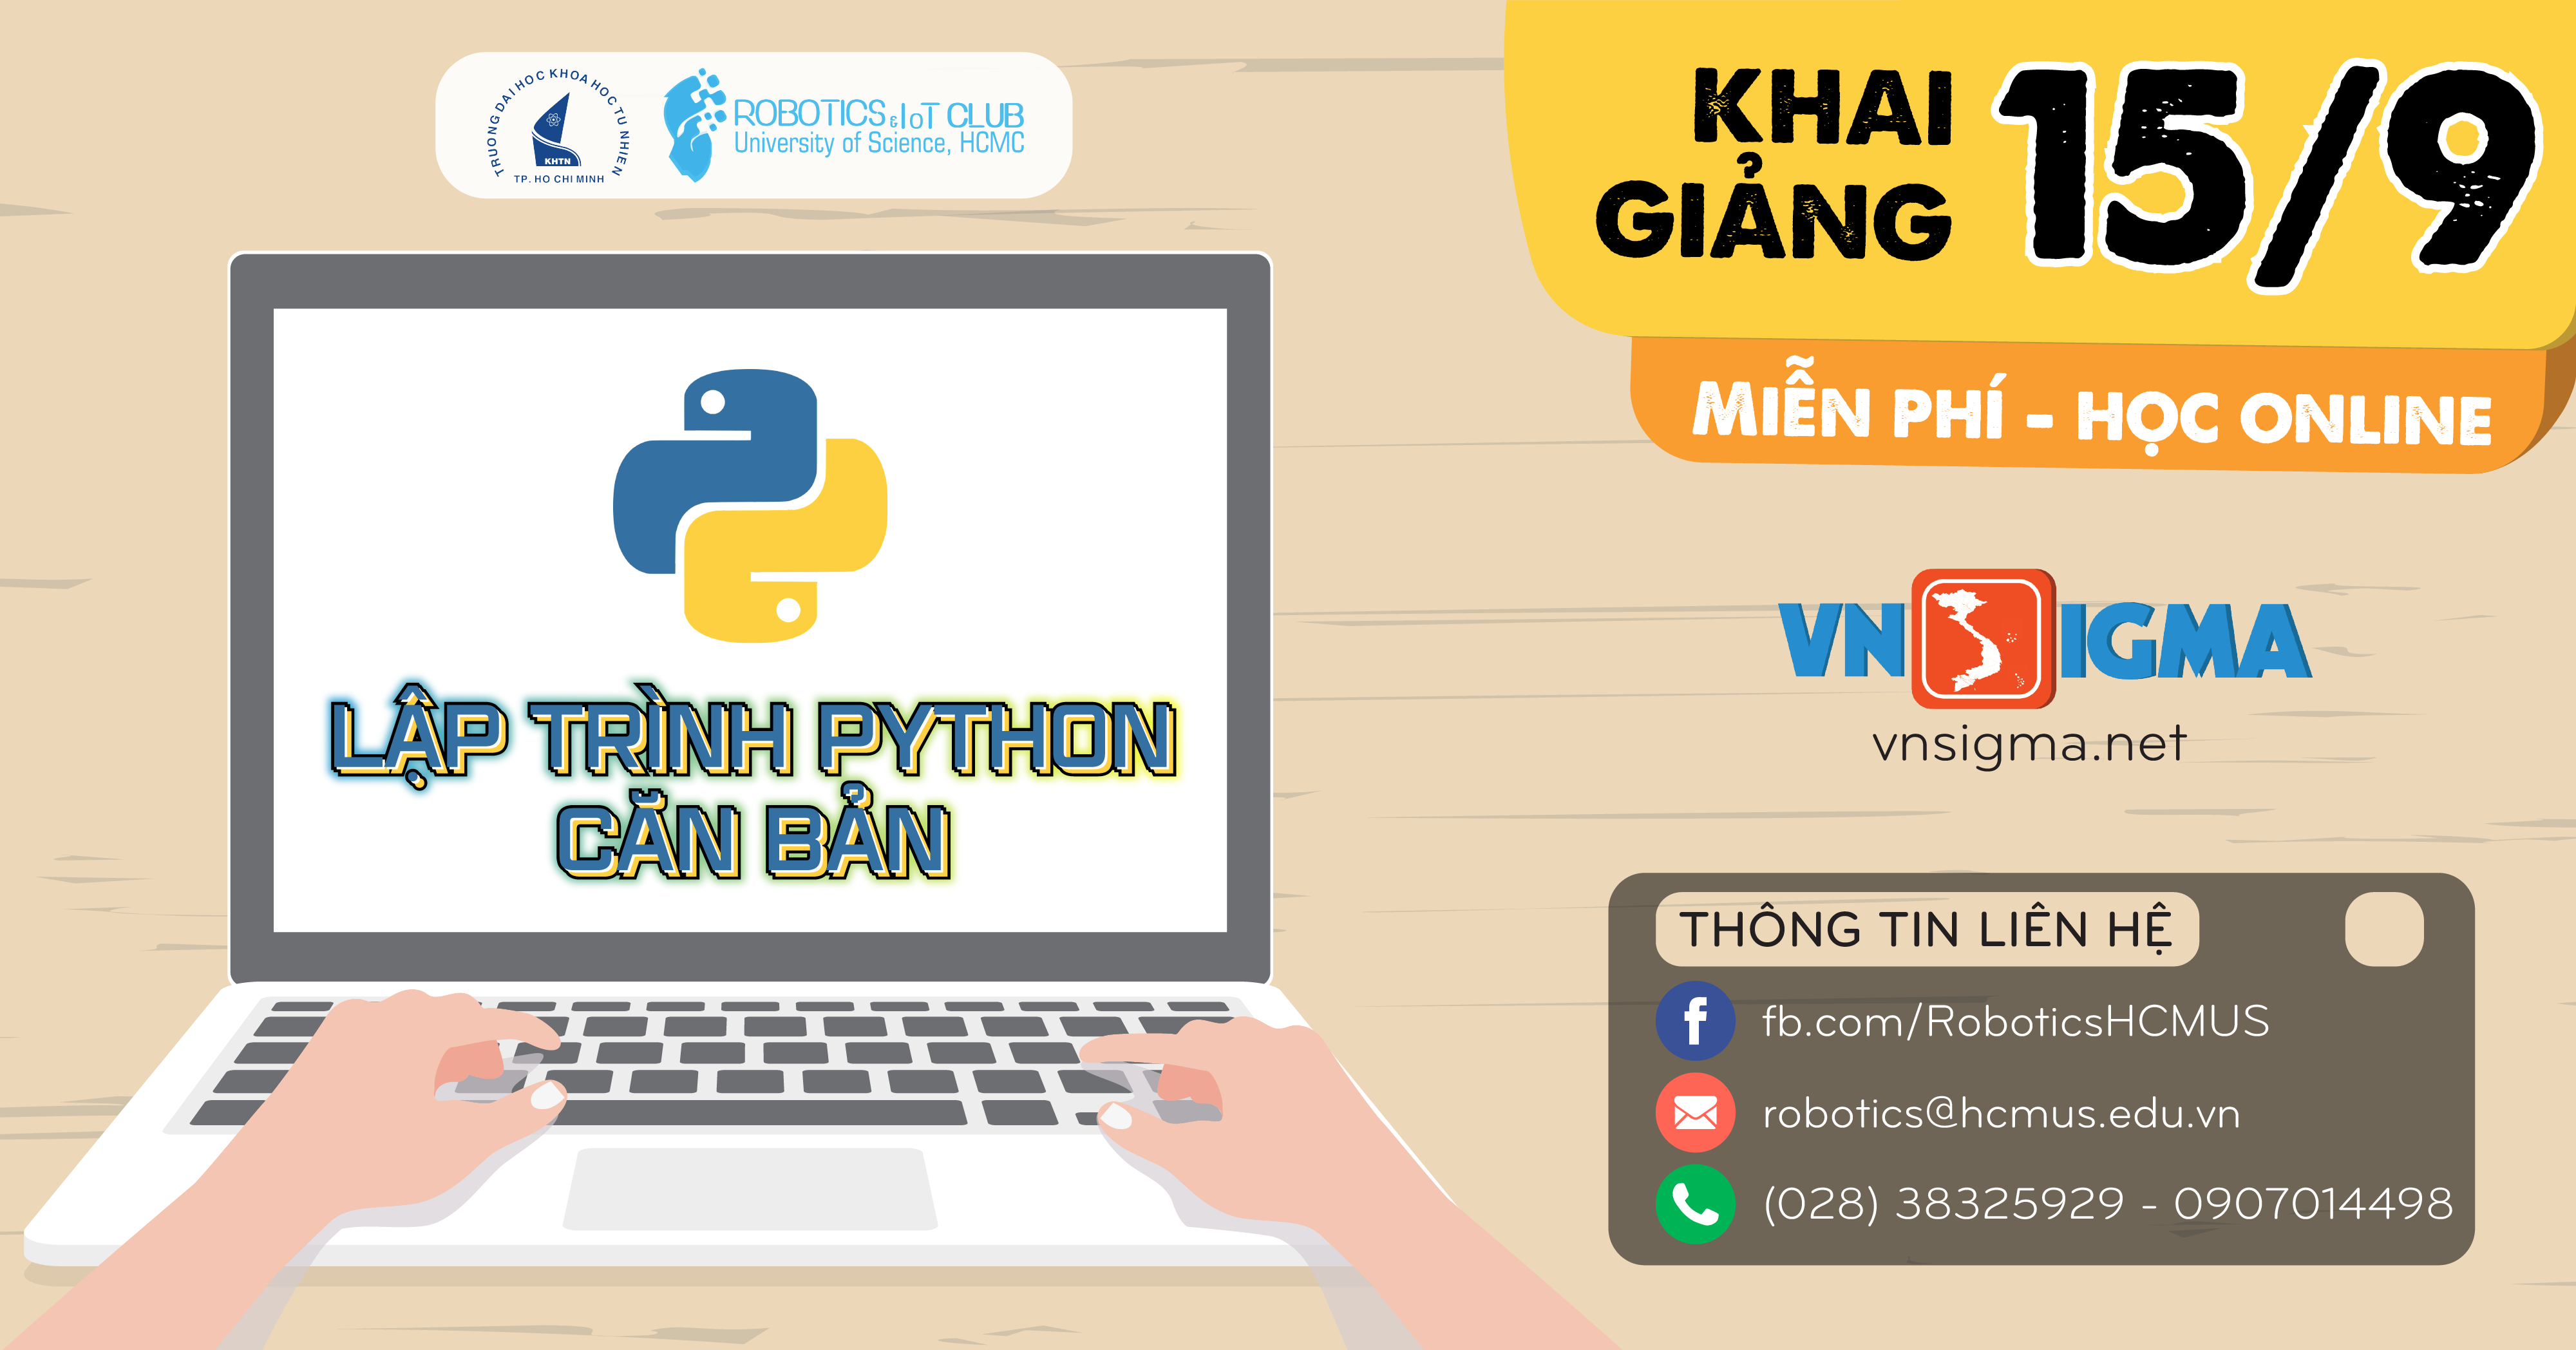 Thông báo khóa học trực tuyến “Lập trình Python căn bản” miễn phí